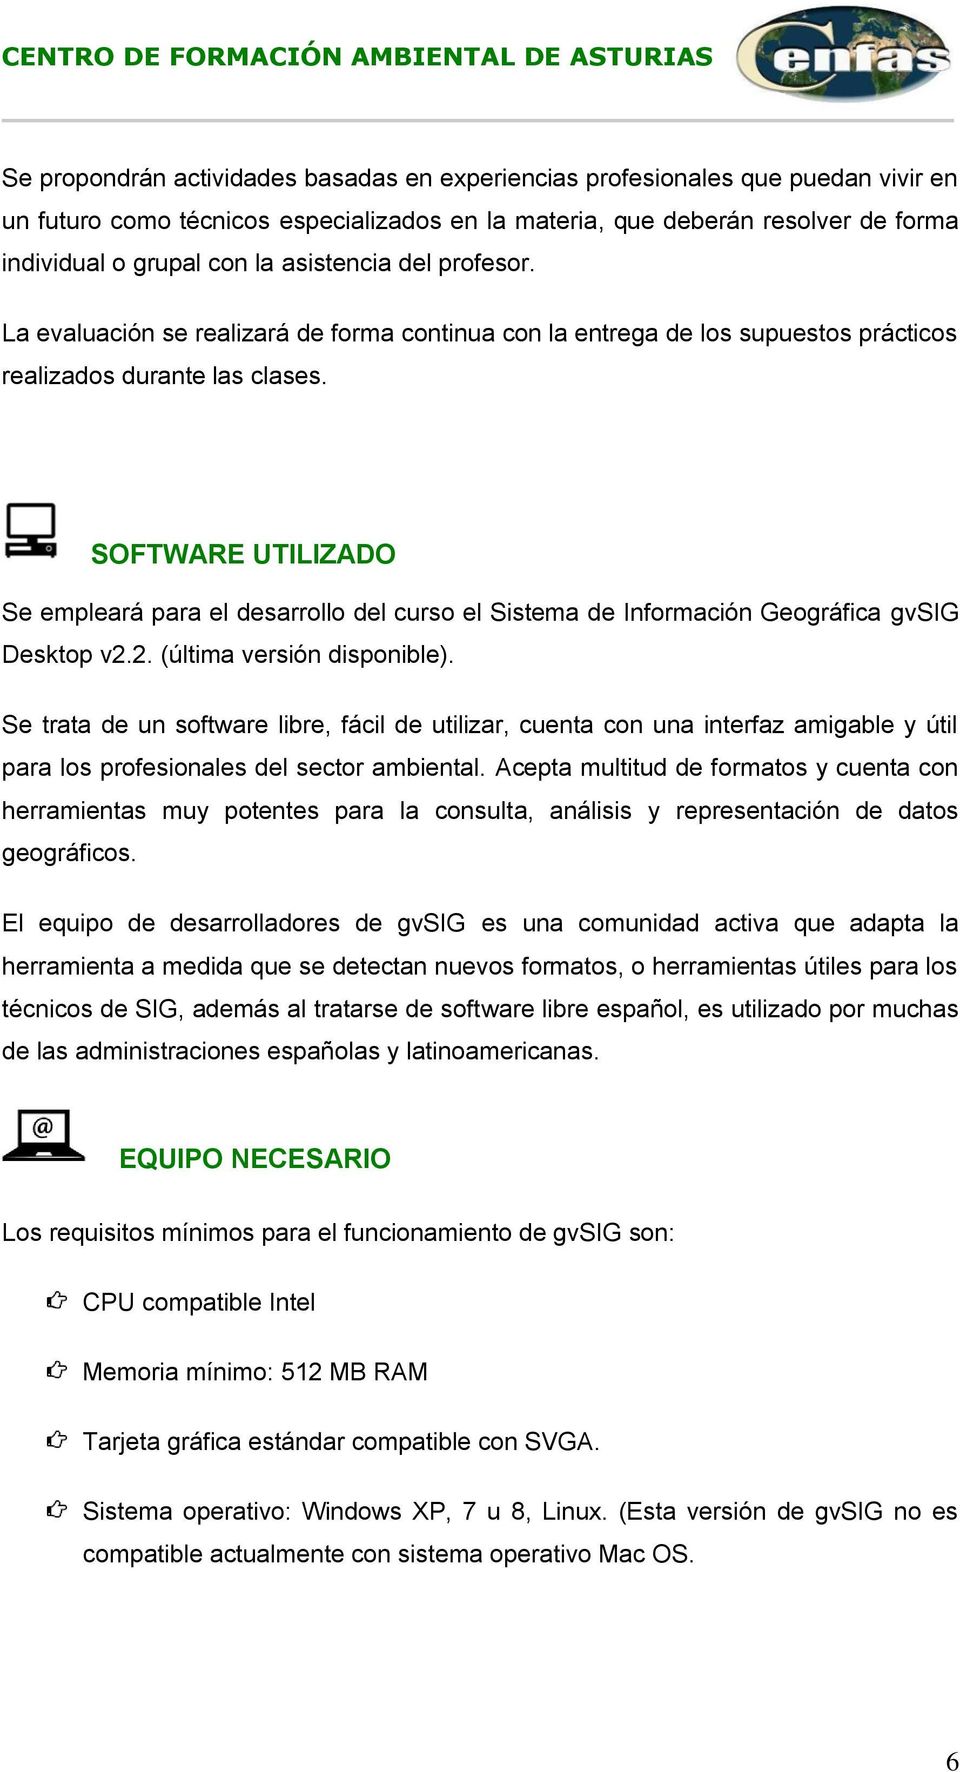 SOFTWARE UTILIZADO Se empleará para el desarrollo del curso el Sistema de Información Geográfica gvsig Desktop v2.2. (última versión disponible).